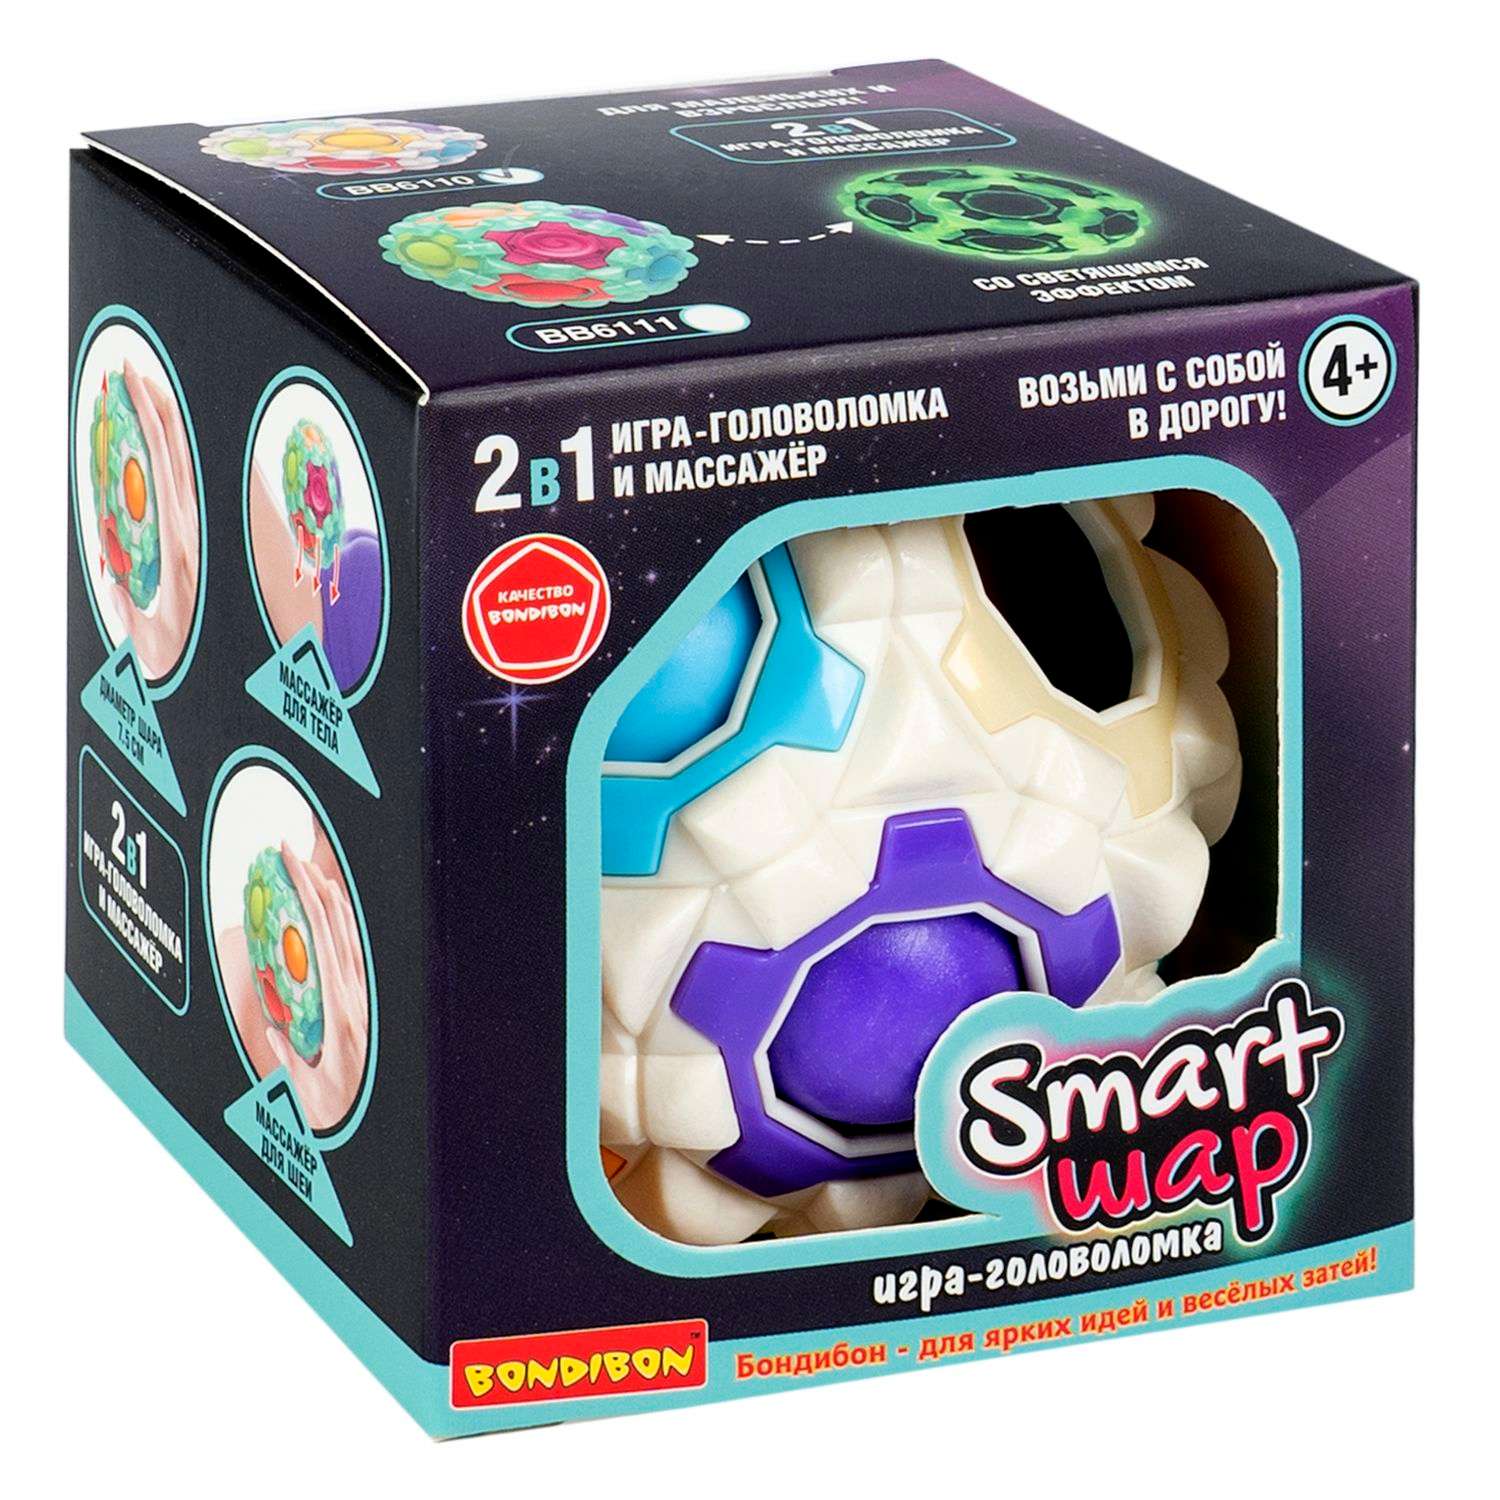 Развивающая головоломка BONDIBON SMART шар 2в1 игрушка - массажер белого цвета - фото 3